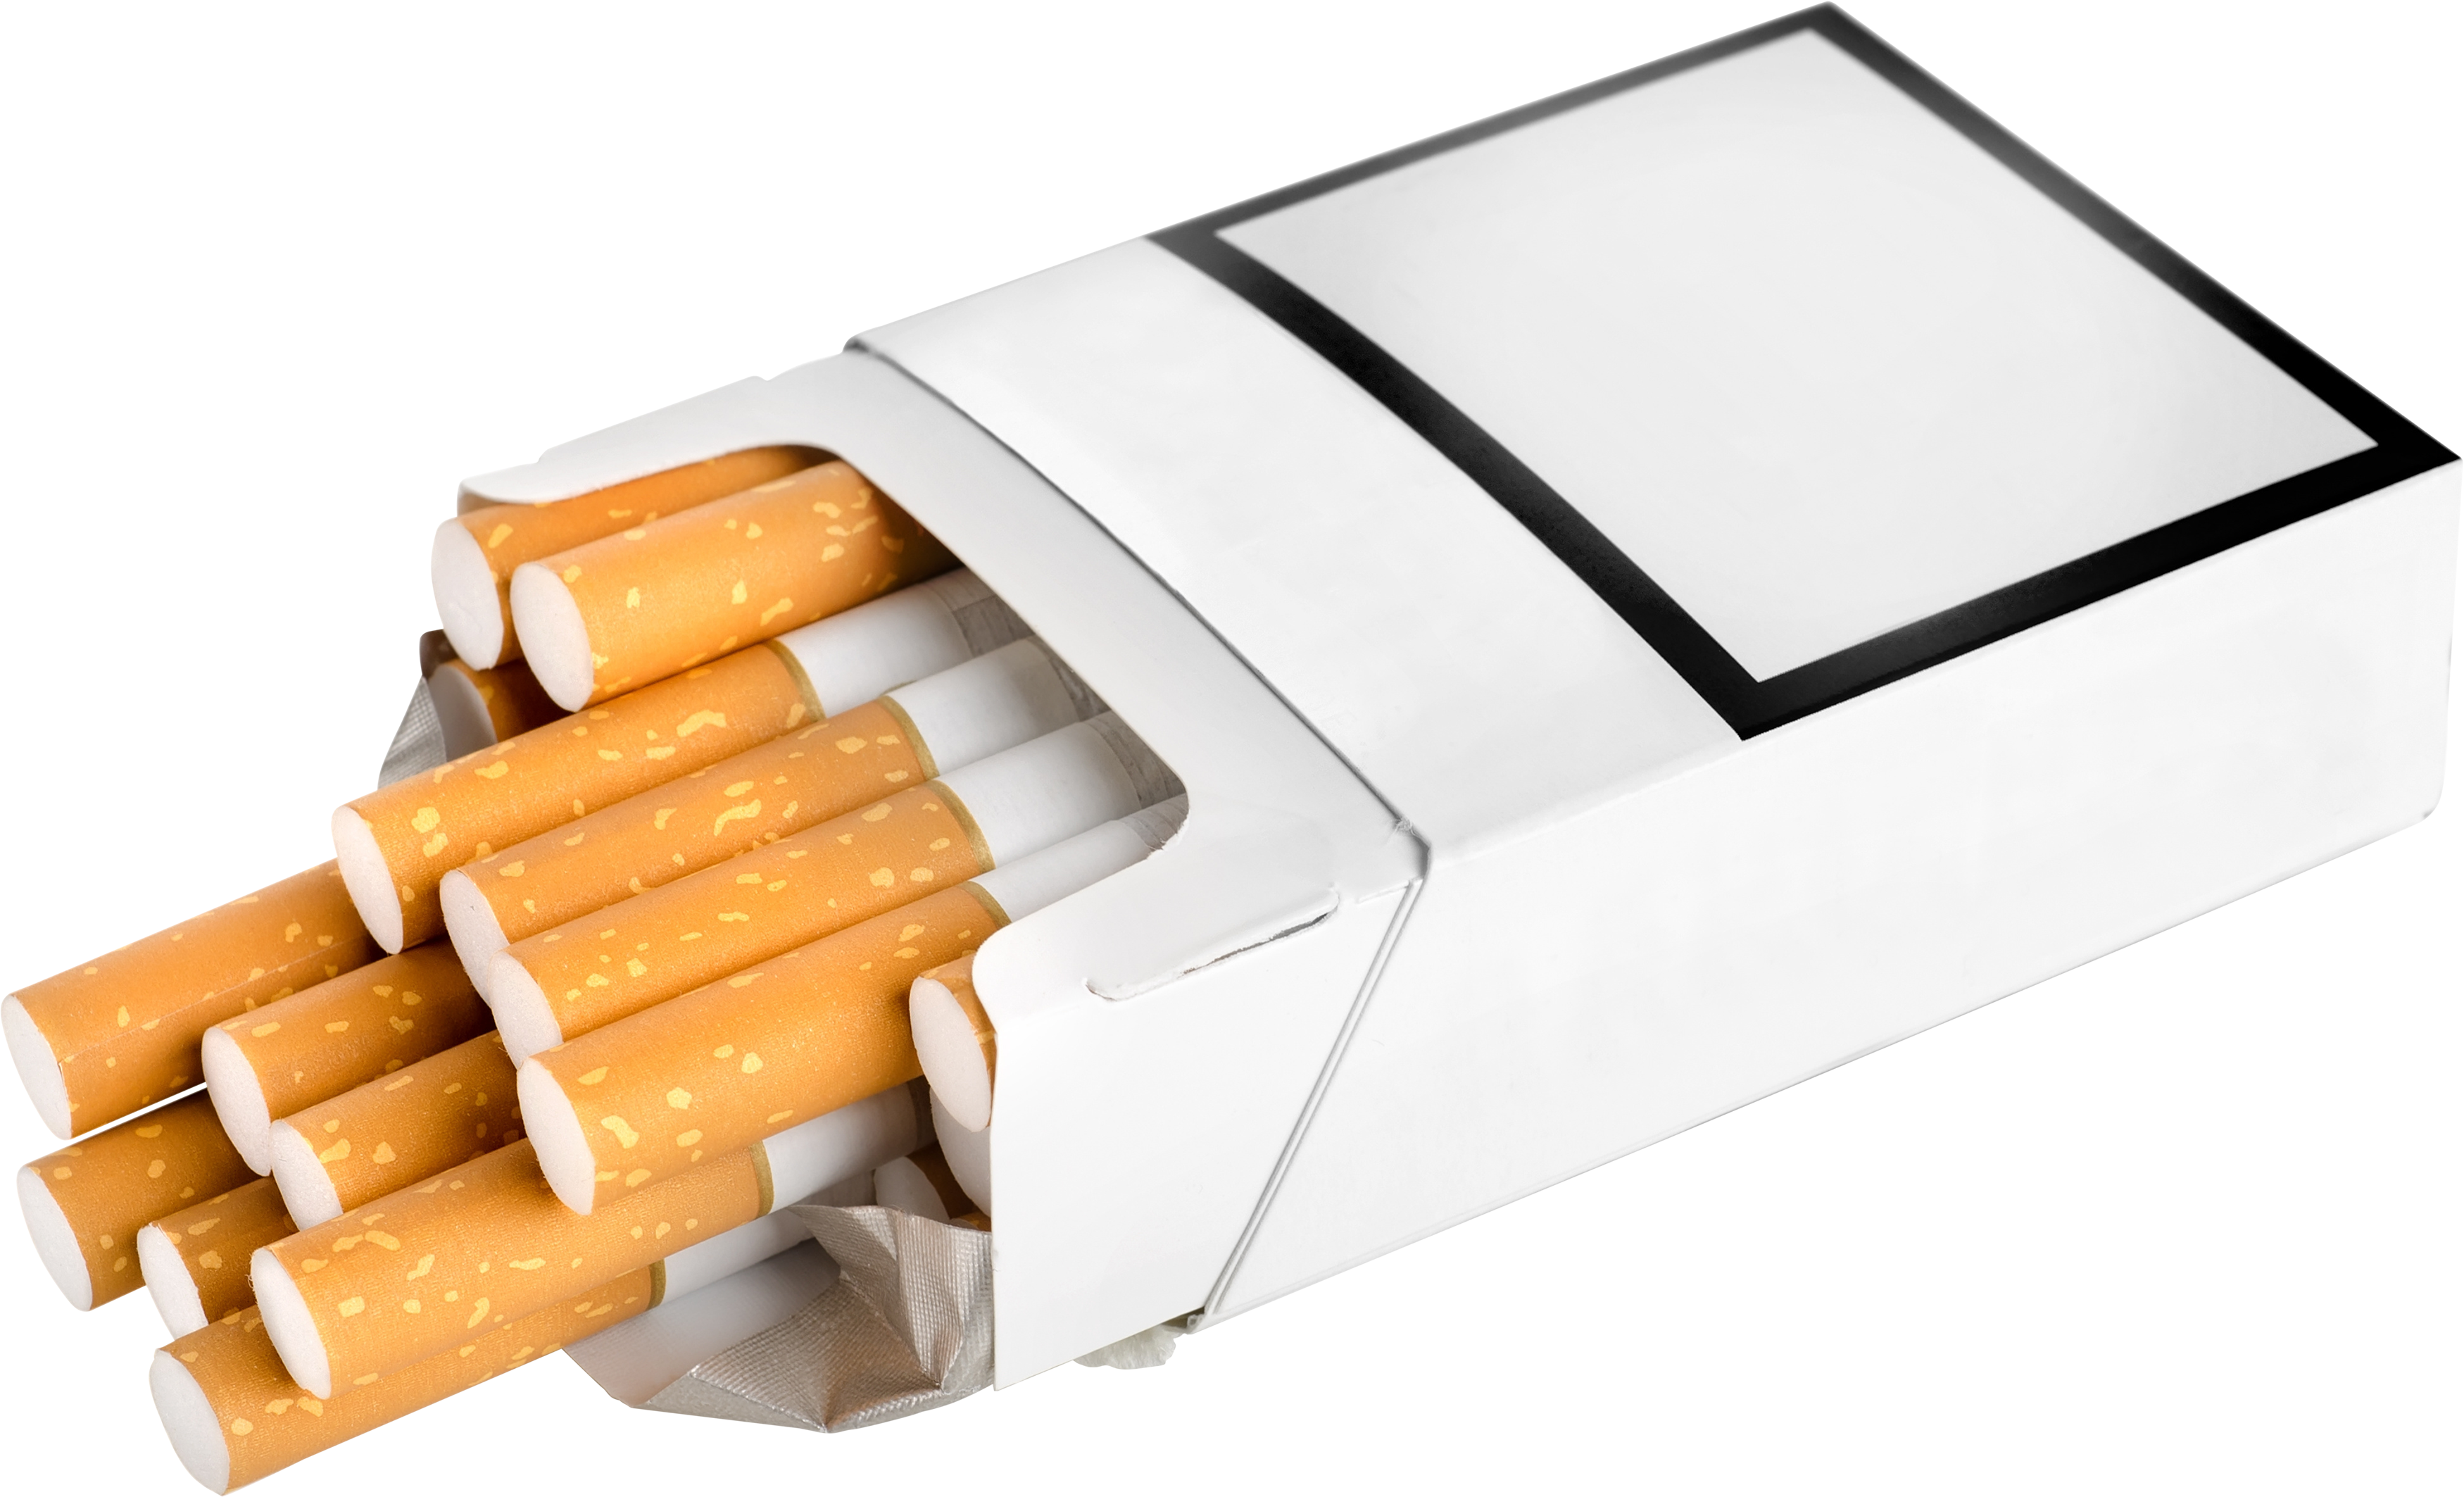 सिगरेट का एक पैकेट